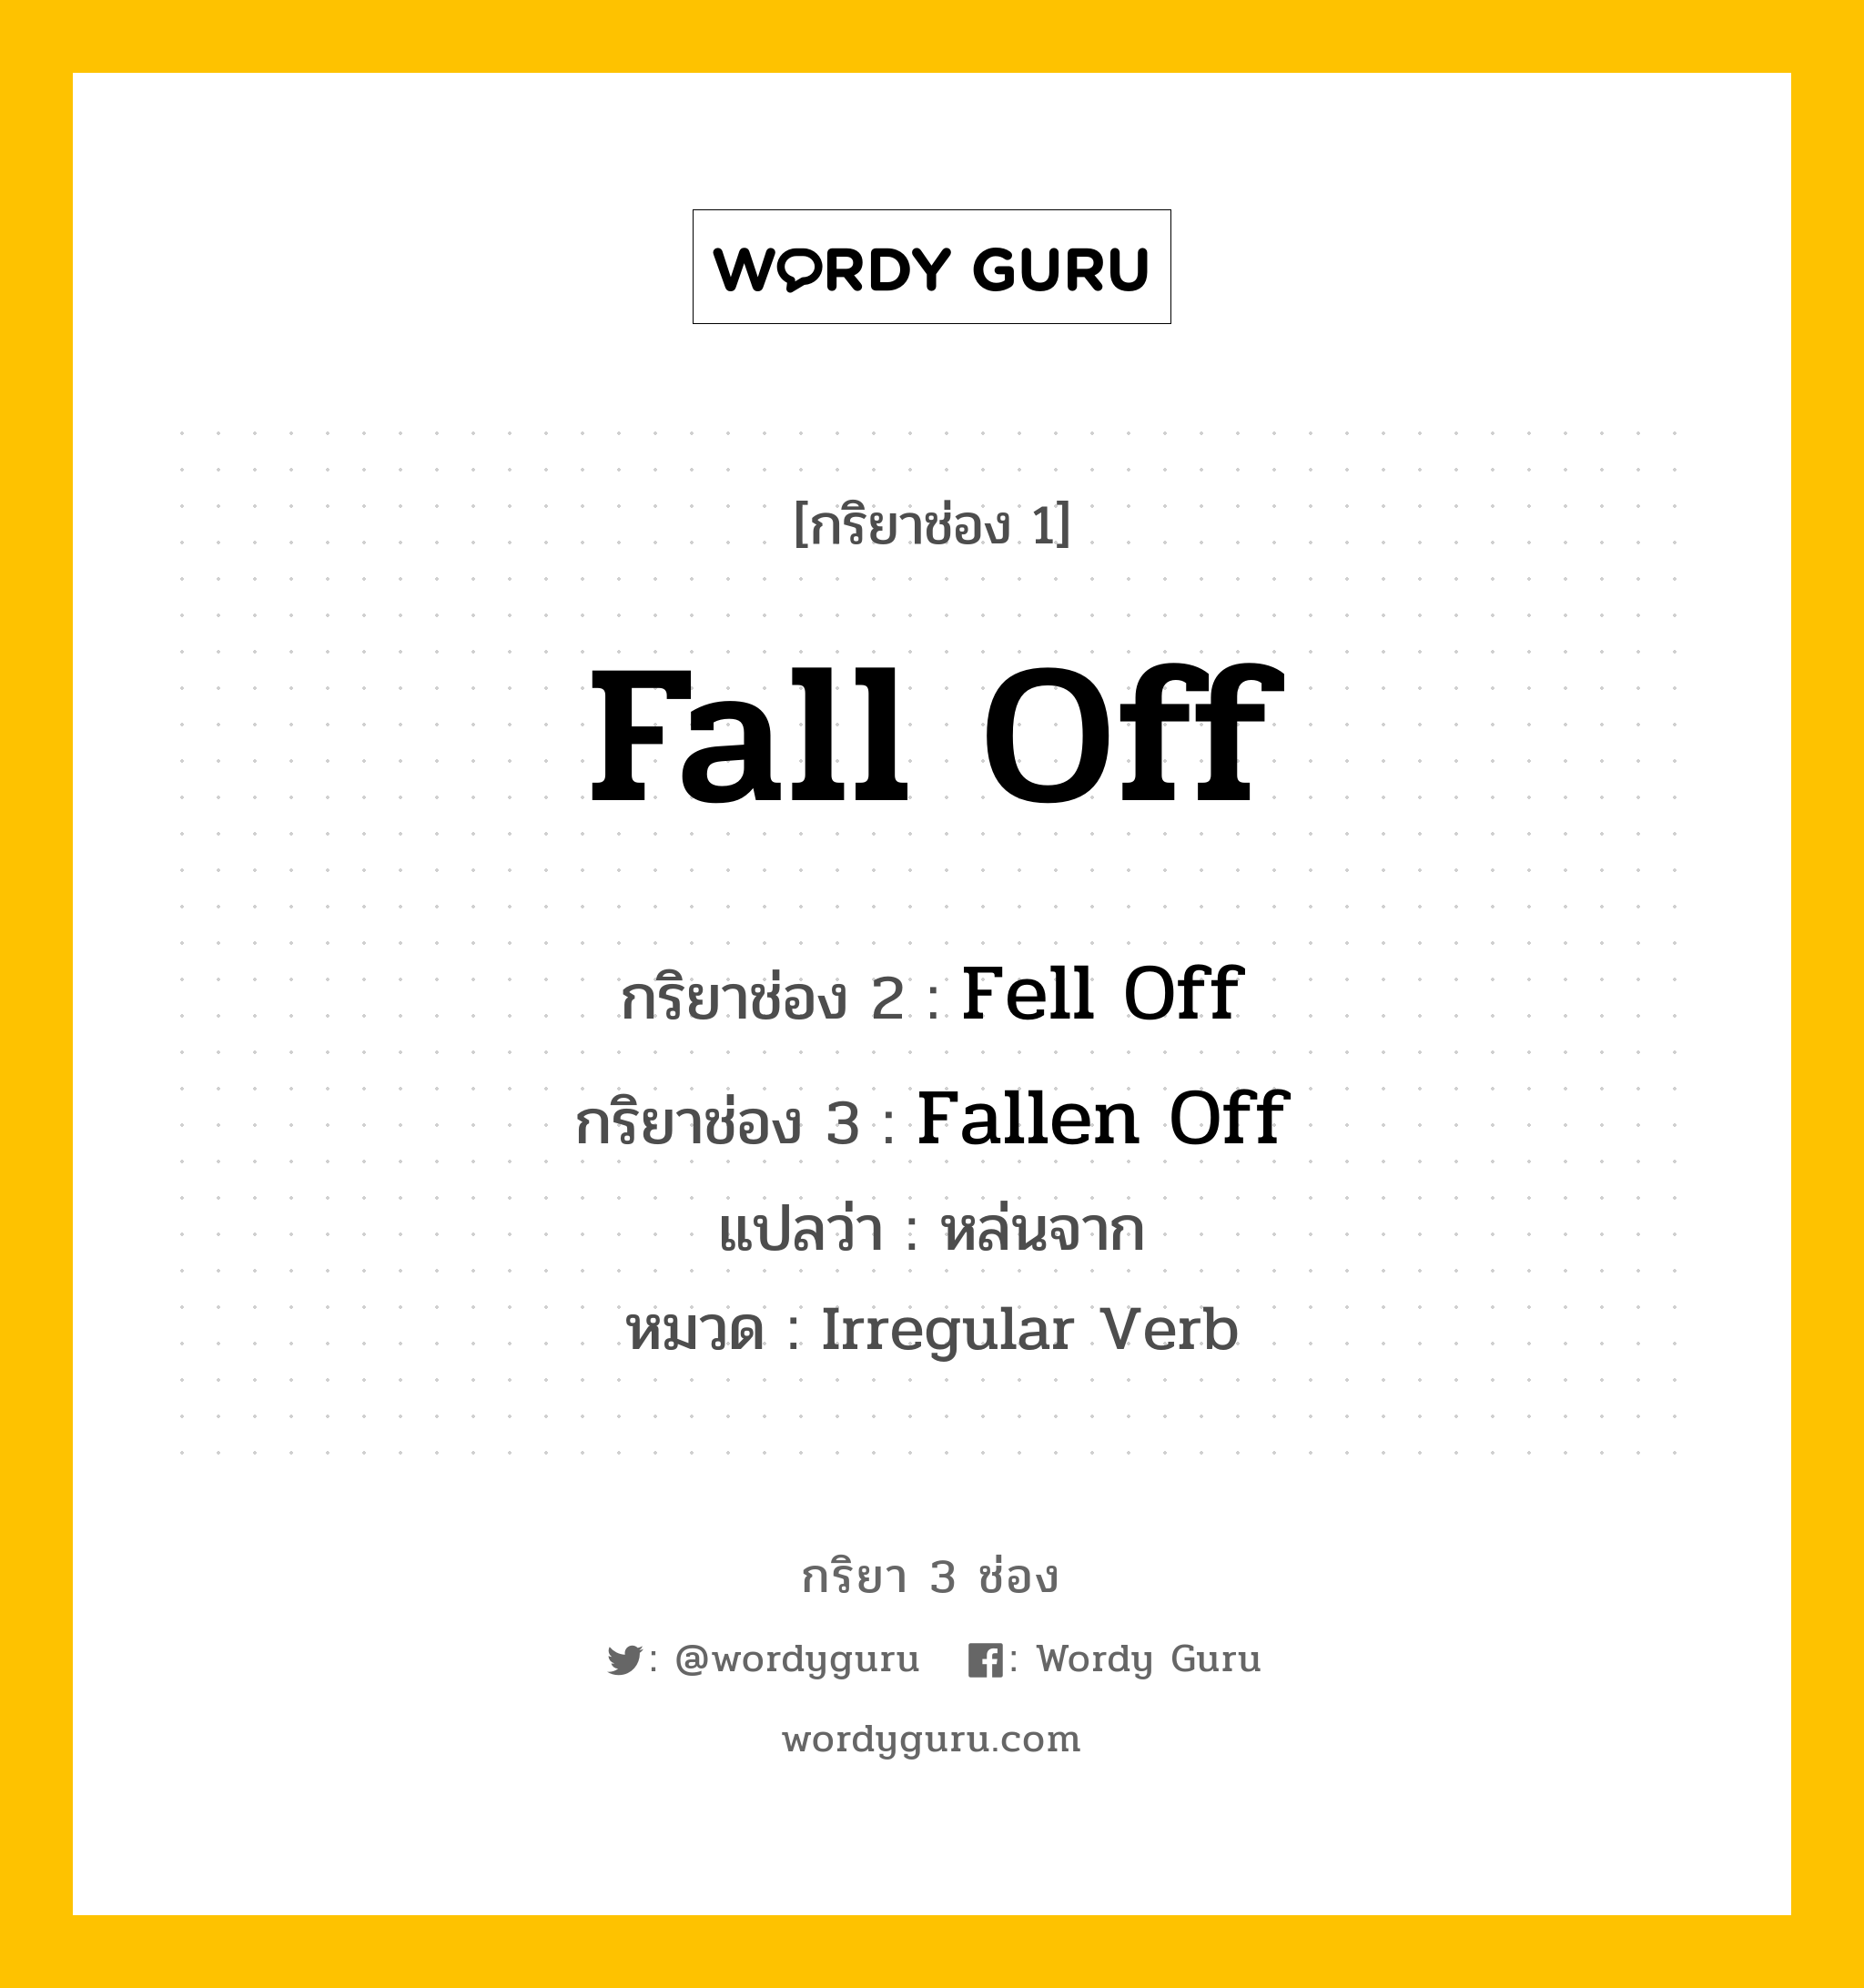 กริยา 3 ช่อง: Fall Off ช่อง 2 Fall Off ช่อง 3 คืออะไร, กริยาช่อง 1 Fall Off กริยาช่อง 2 Fell Off กริยาช่อง 3 Fallen Off แปลว่า หล่นจาก หมวด Irregular Verb หมวด Irregular Verb